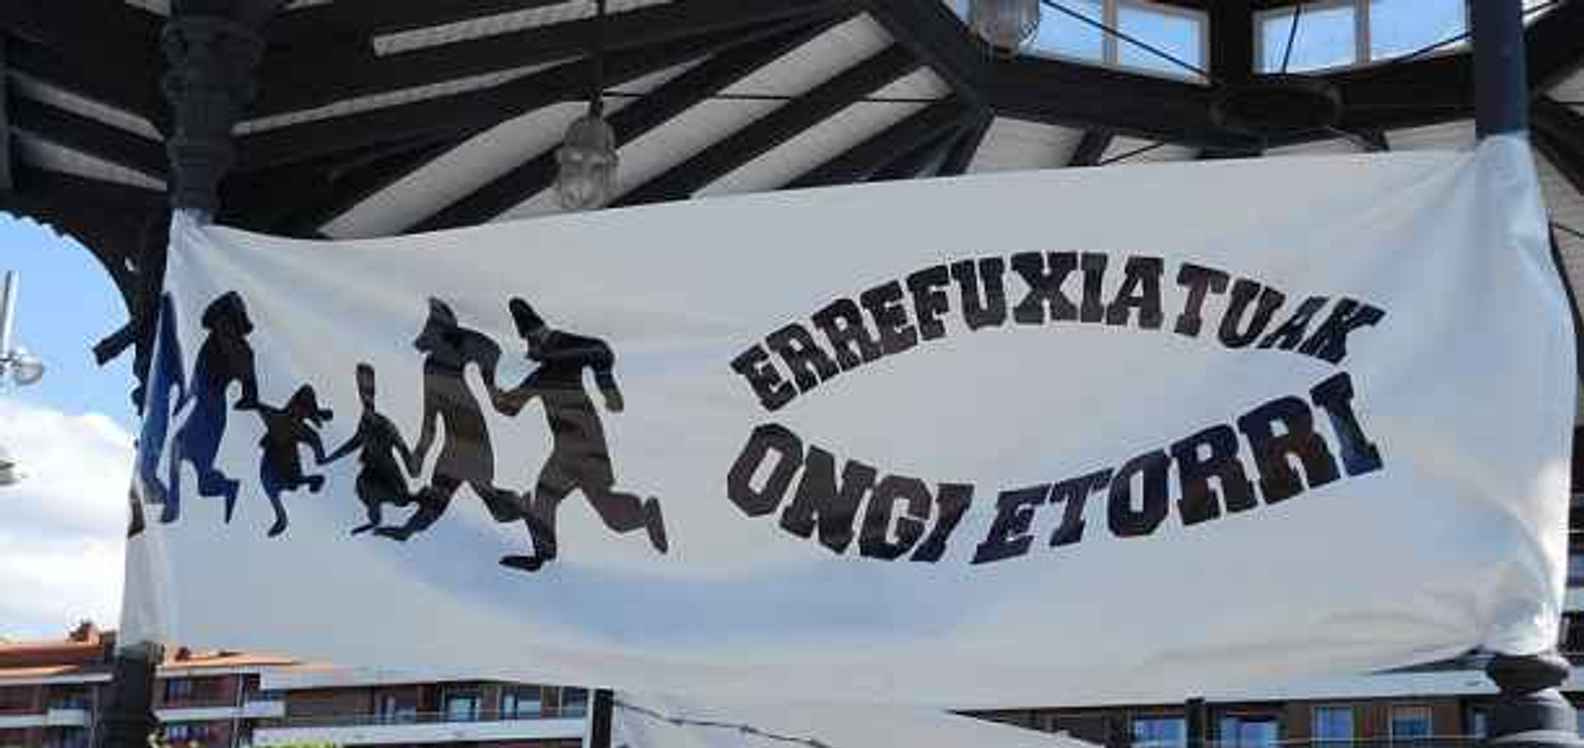 Errefuxiatuak Ongi Etorri refugees banner